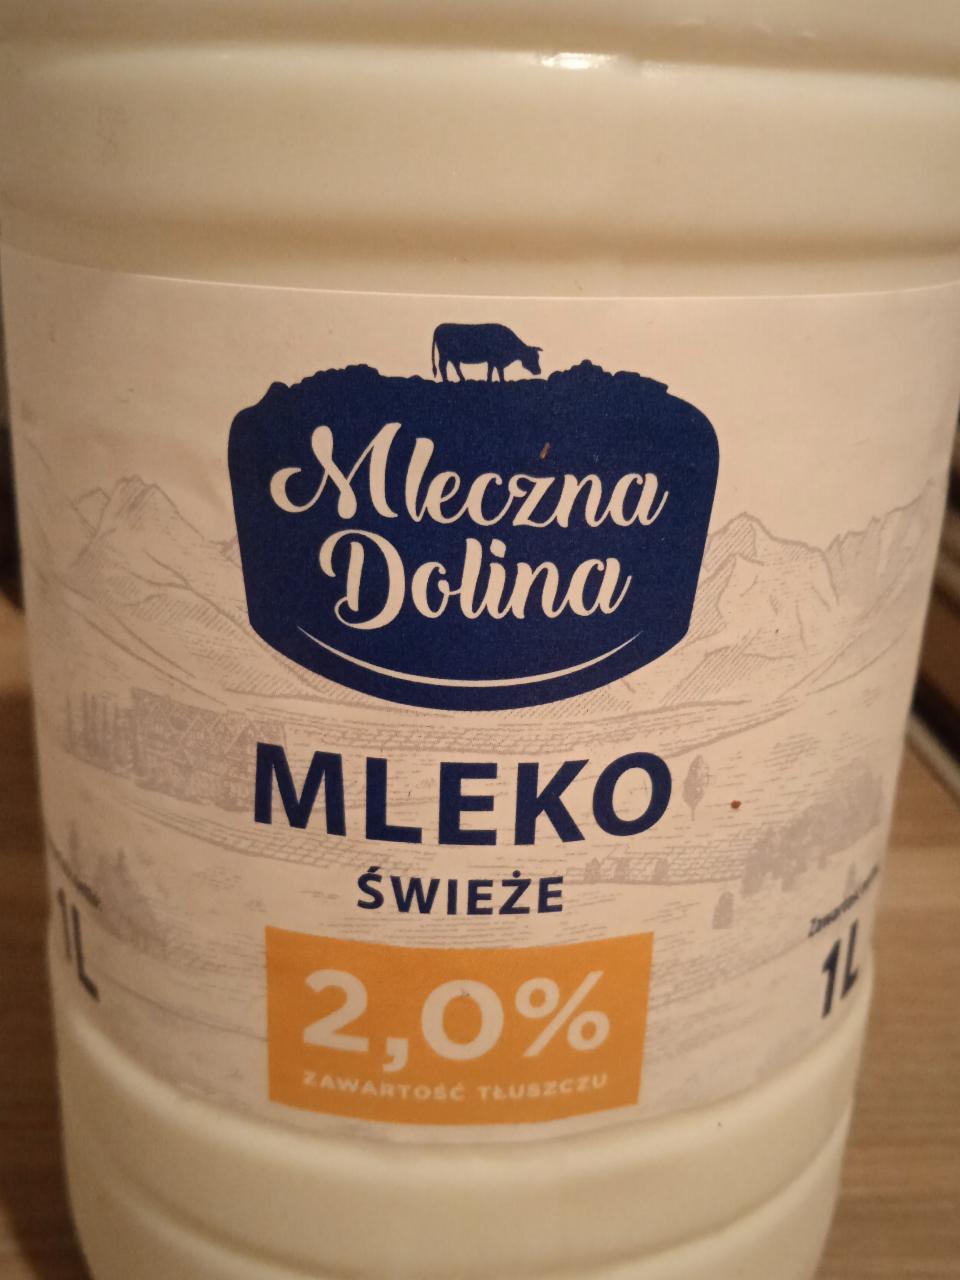 Фото - Молоко польское свежее 2% Mleczna Dolina